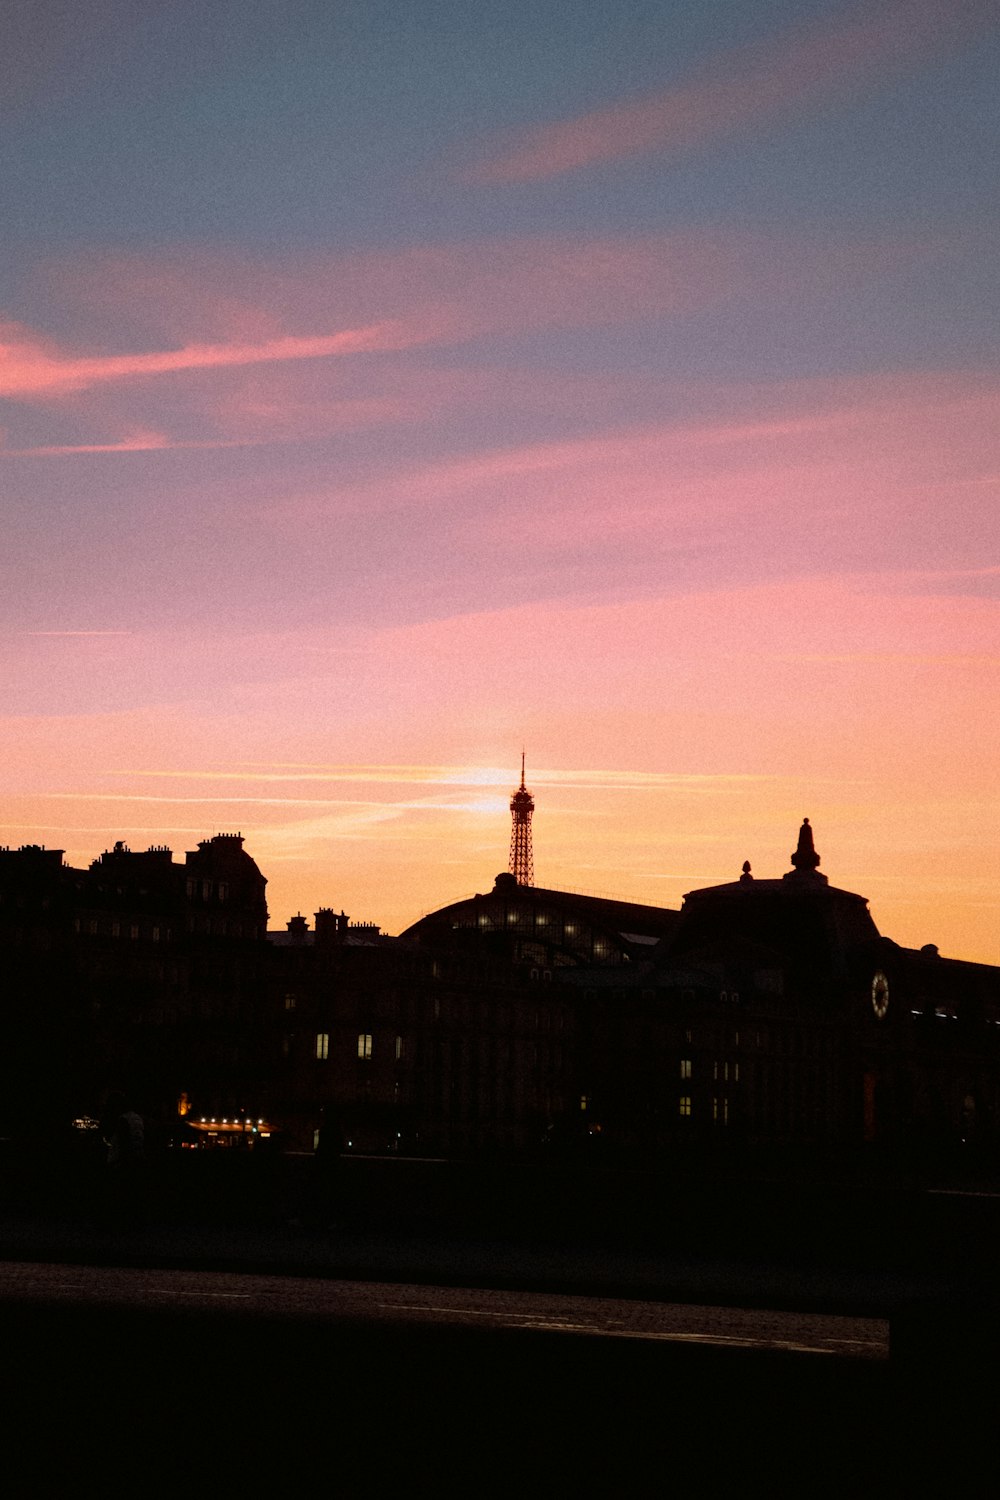 une vue au coucher du soleil d’une ville avec une tour de l’horloge au loin